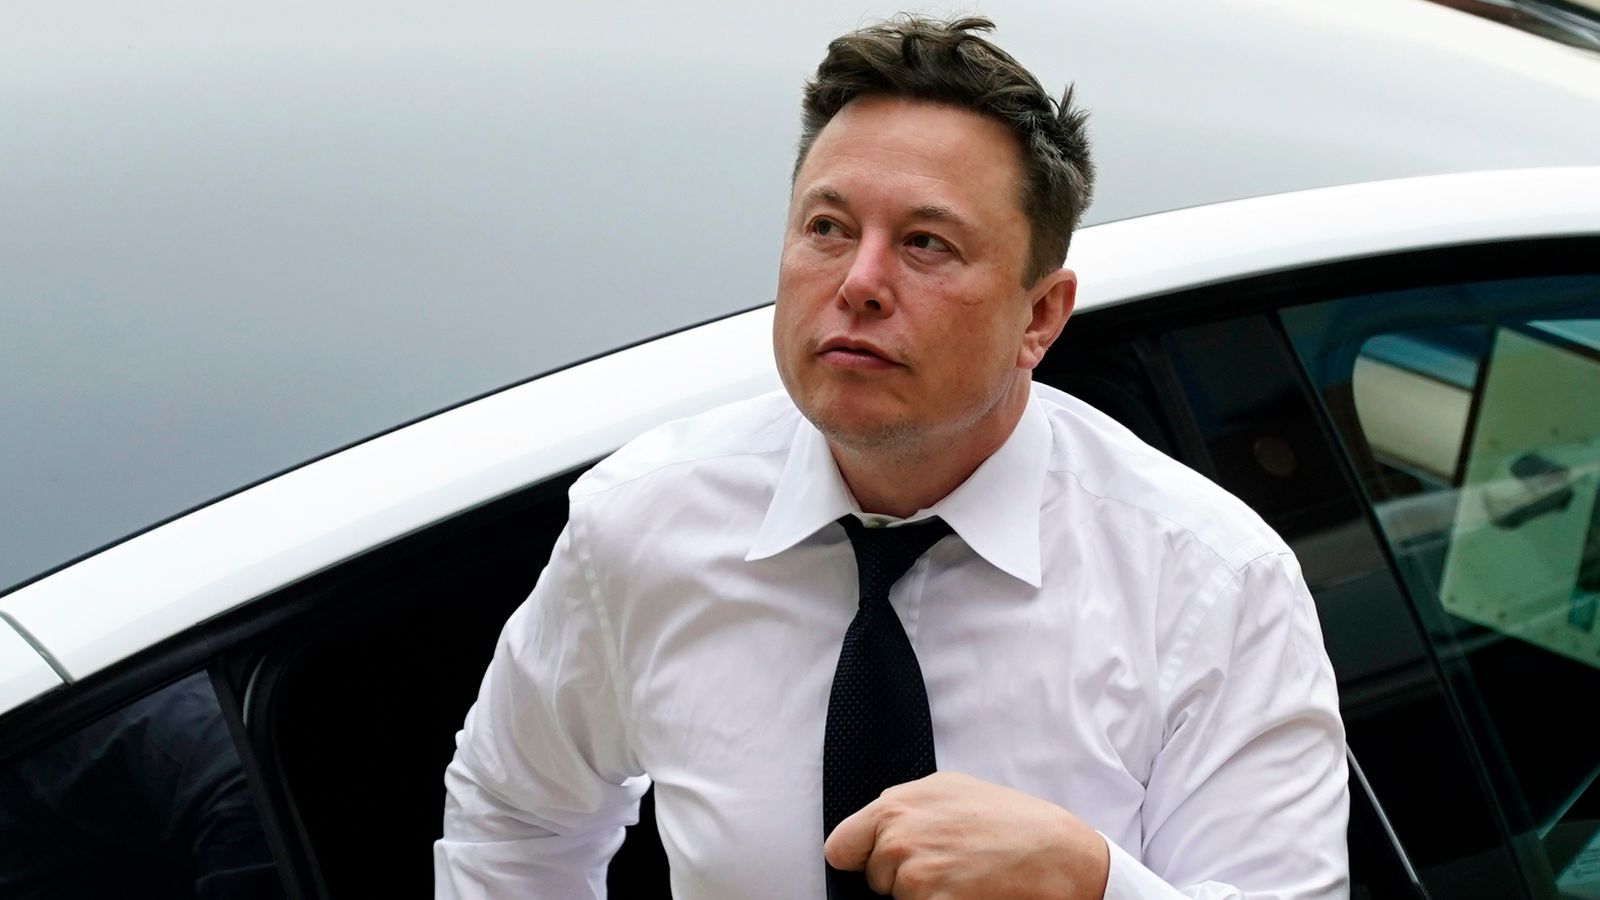 Un harceleur fou attaque la voiture d’Elon Musk alors que le patron de Twitter menace de poursuites judiciaires contre le compte qui suit son jet privé |  Nouvelles américaines